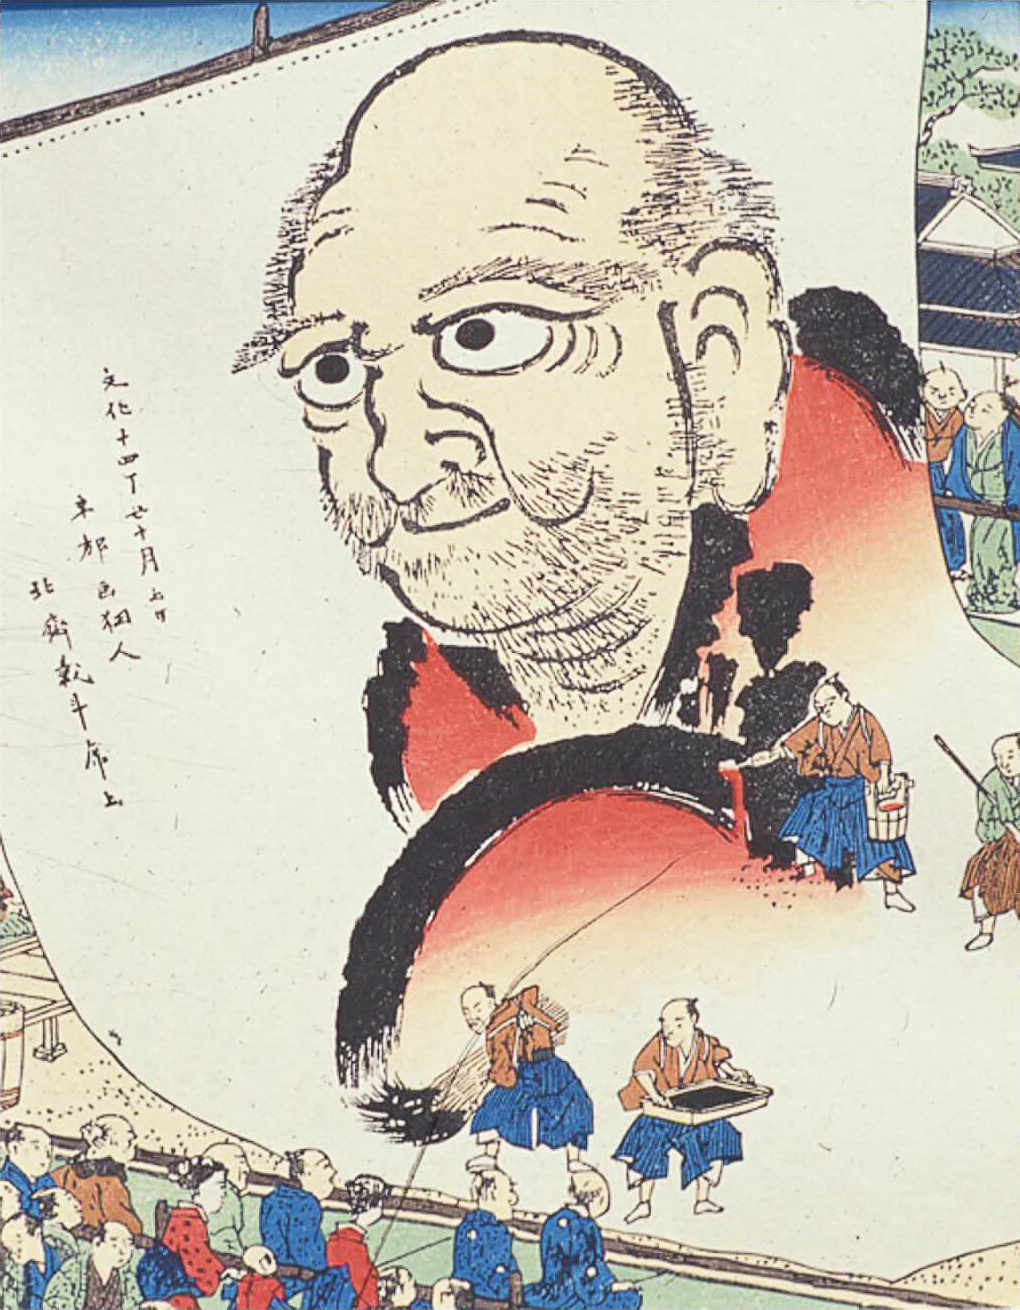 images/Hokusai_Daruma.jpg